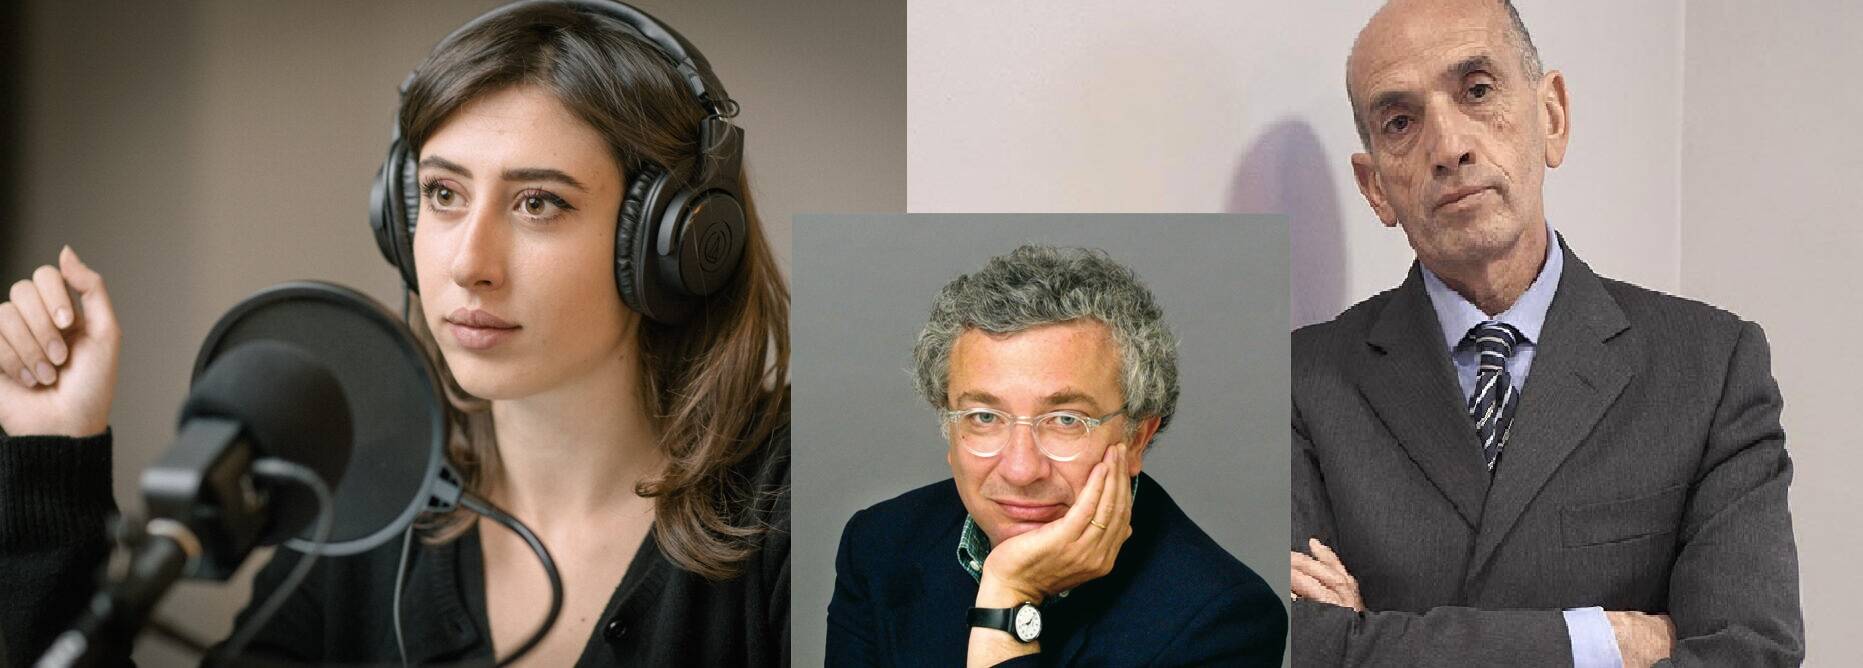 Come cambia il modo di raccontare: Domenico Quirico e Cecilia Sala a confronto ai “Dialoghi Eula”